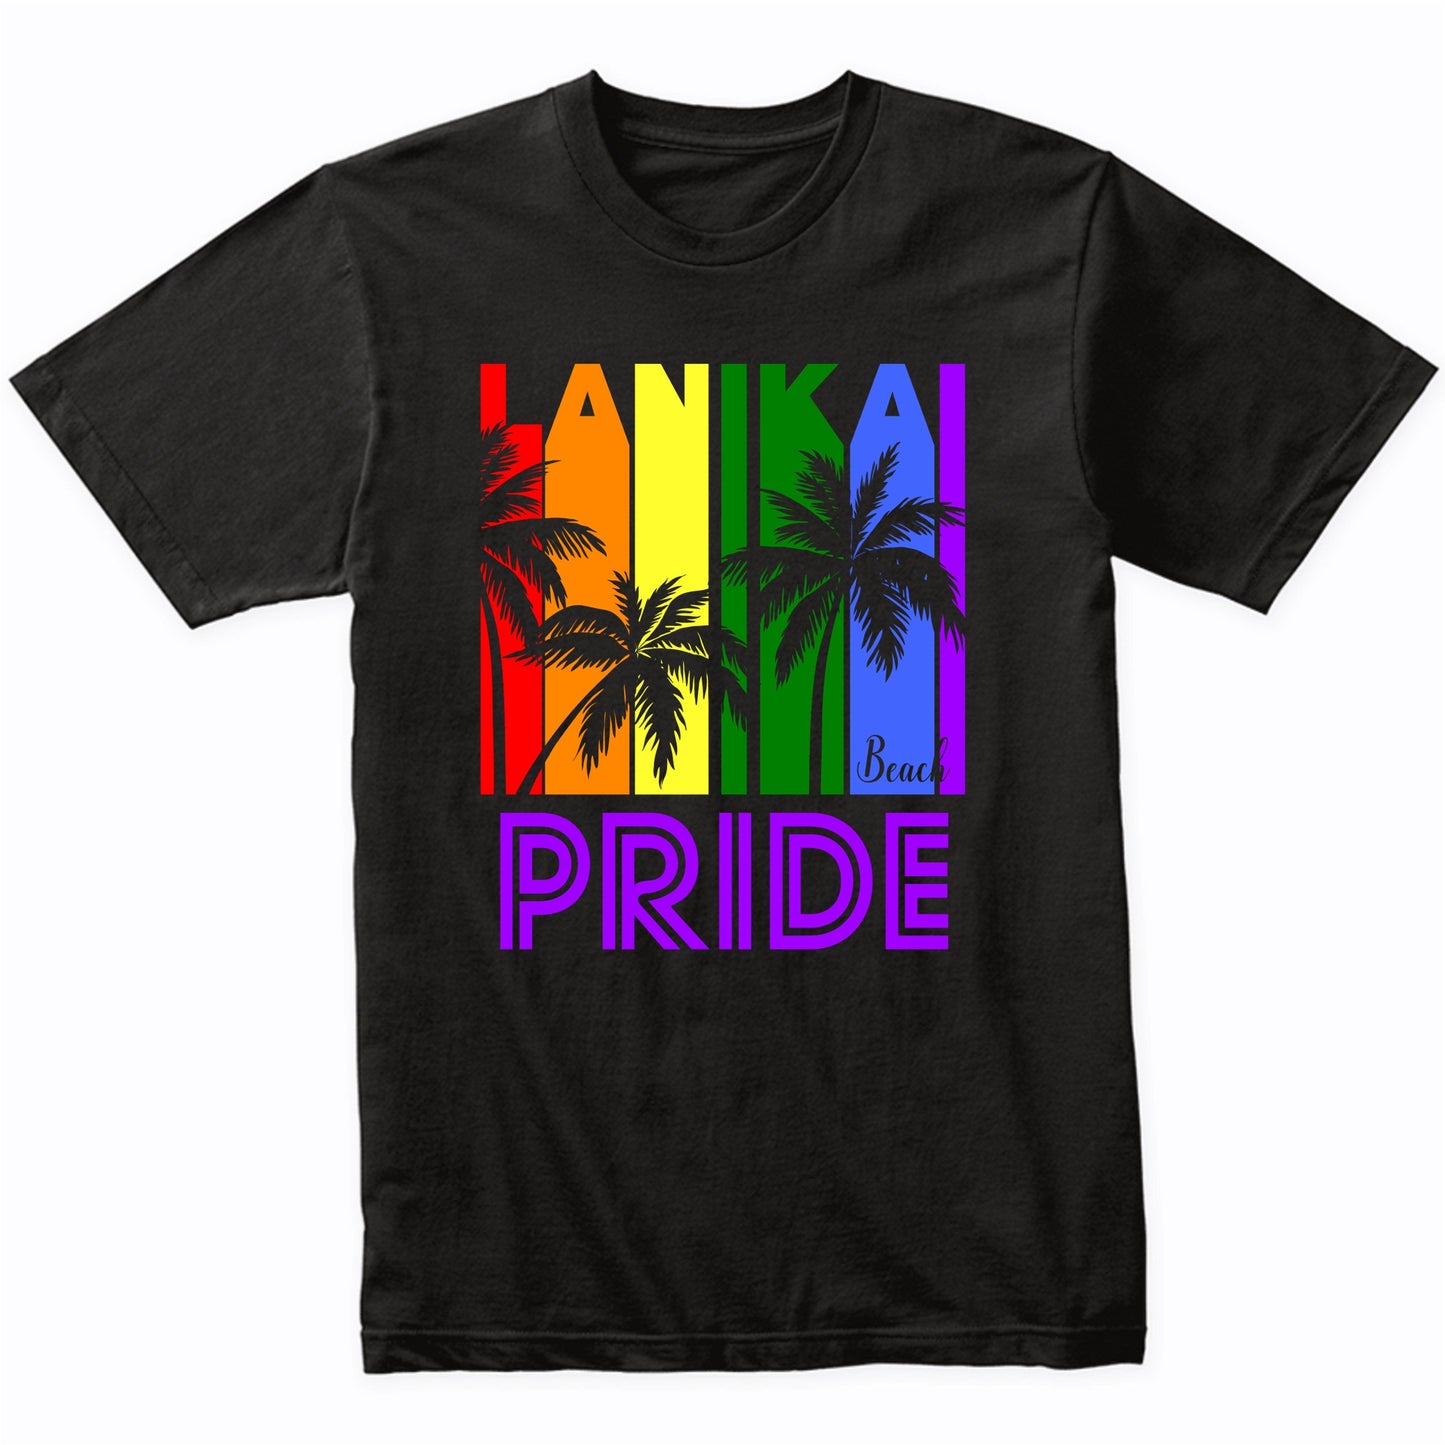 Lanikai Beach Pride Gay Pride LGBTQ Rainbow Palm Trees T-Shirt